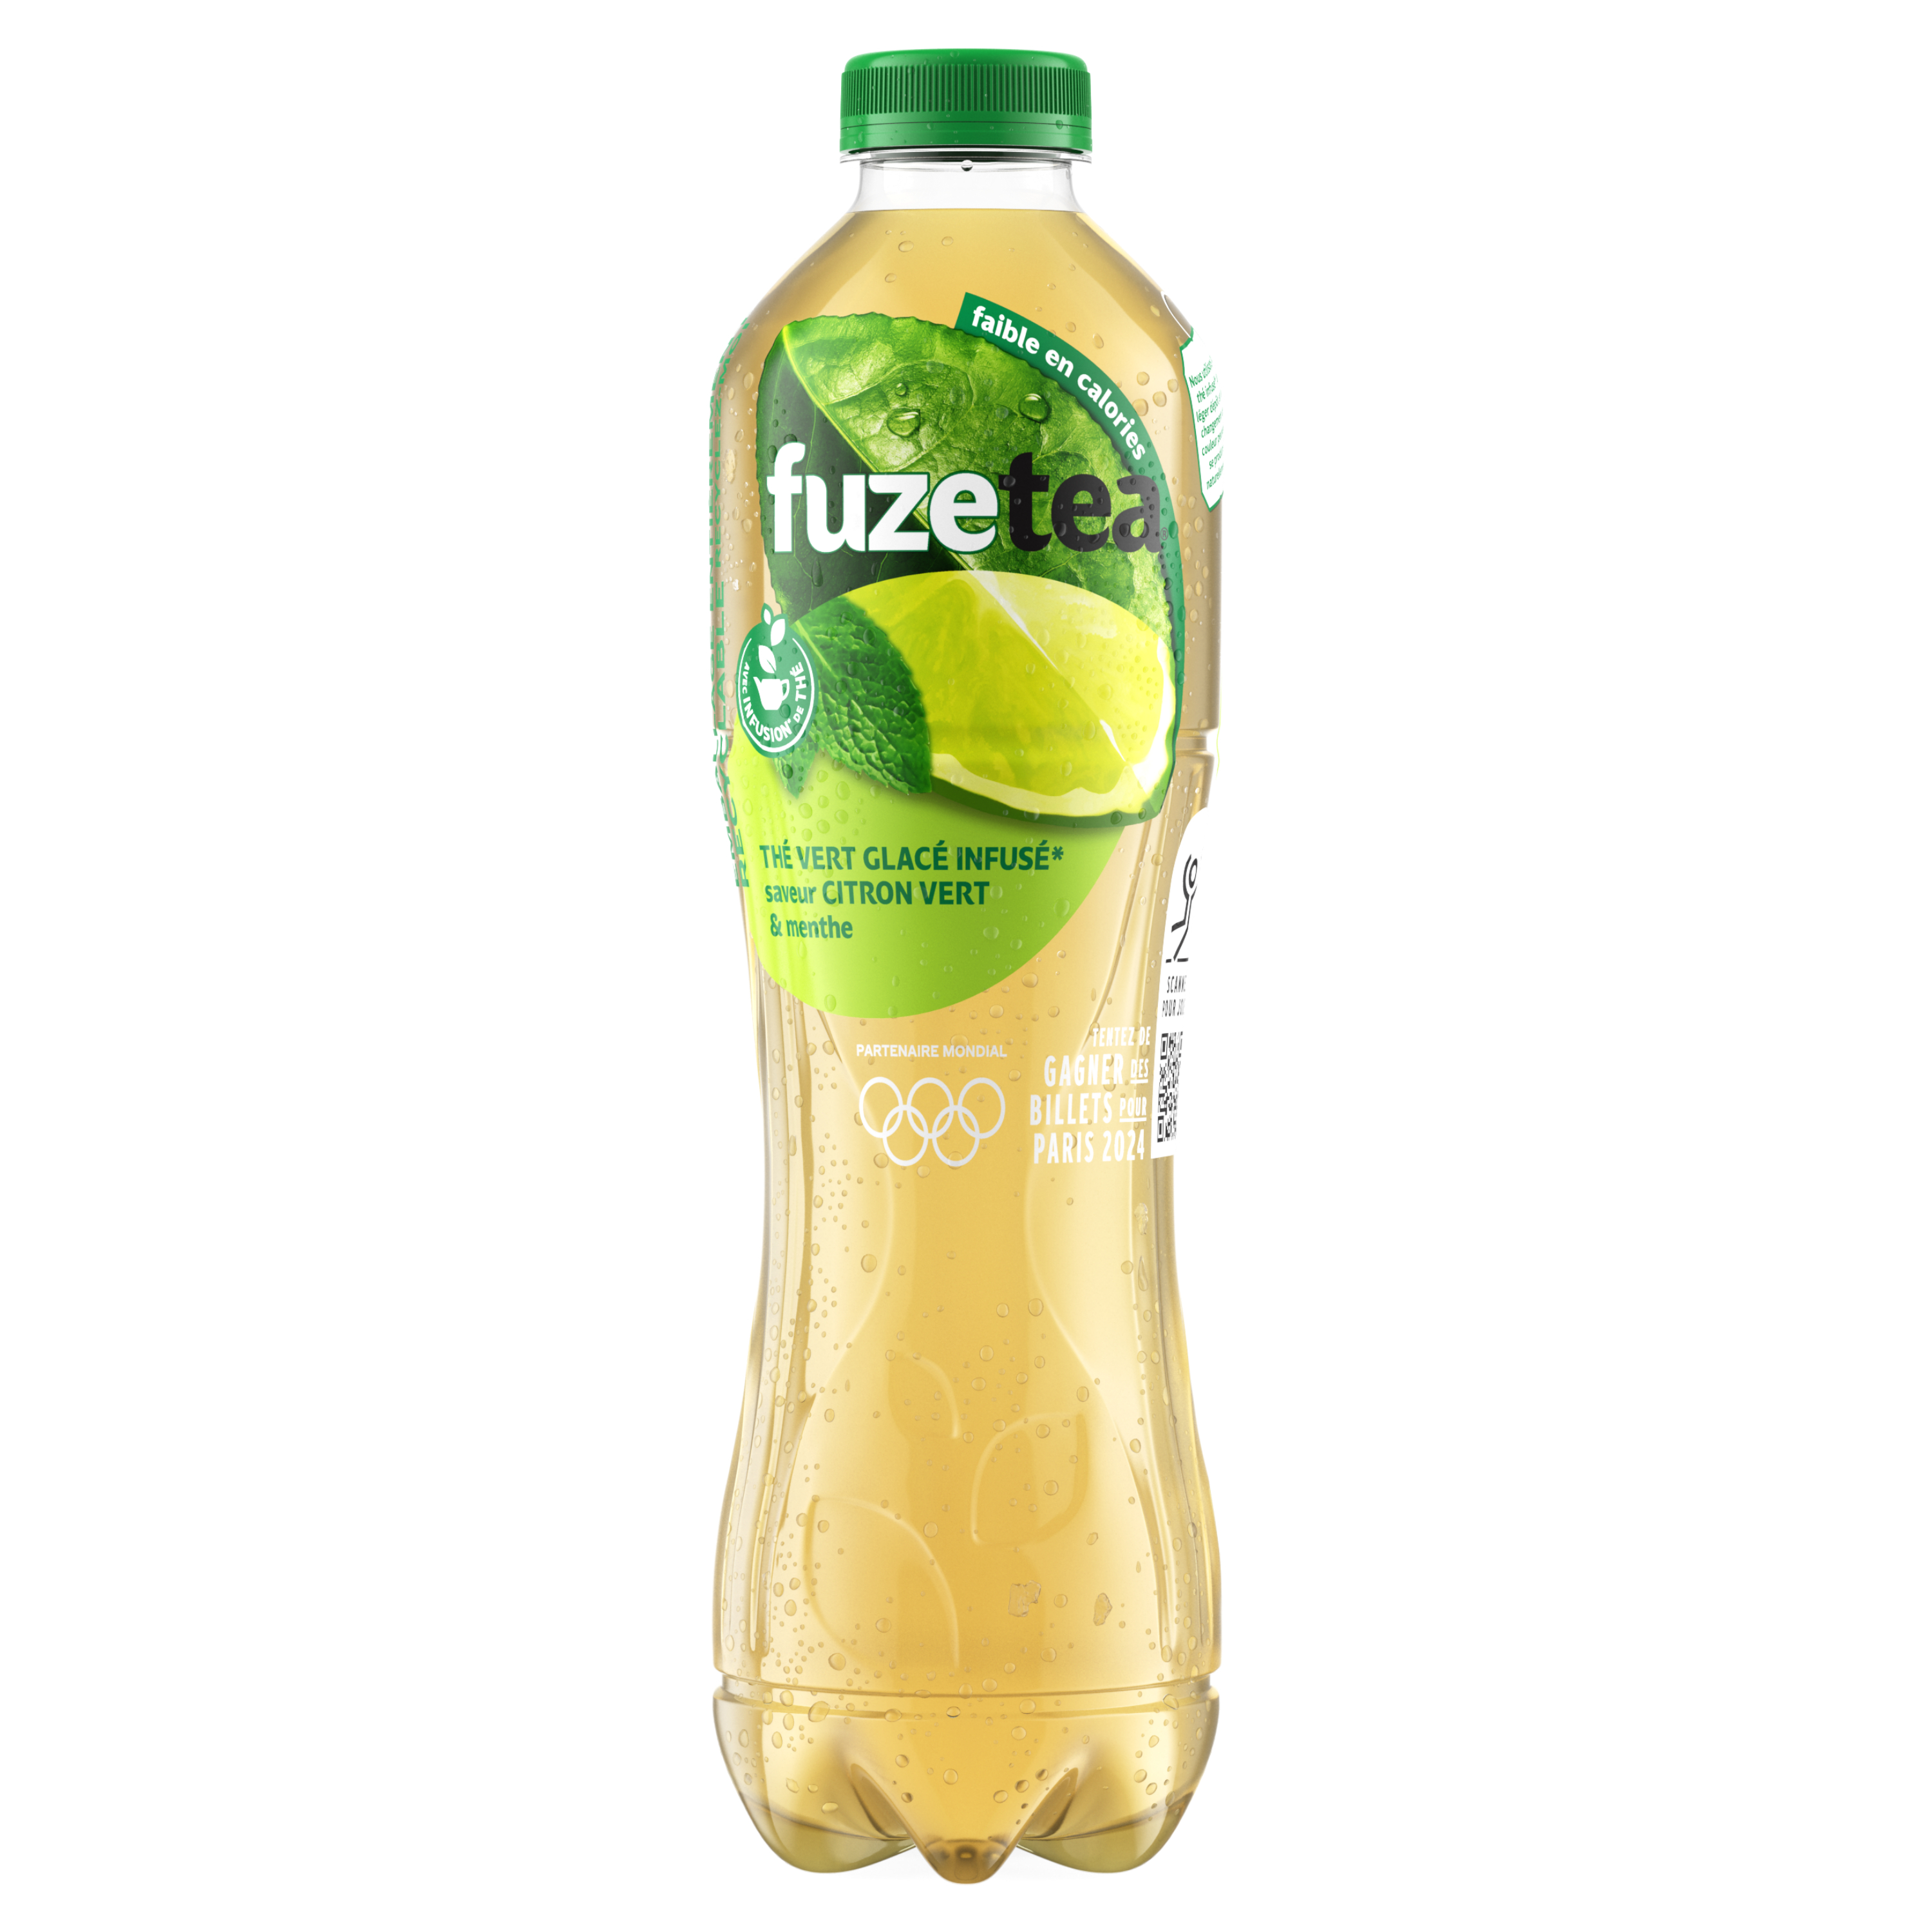 Bouteille de Fuze Tea Citron vert Menthe